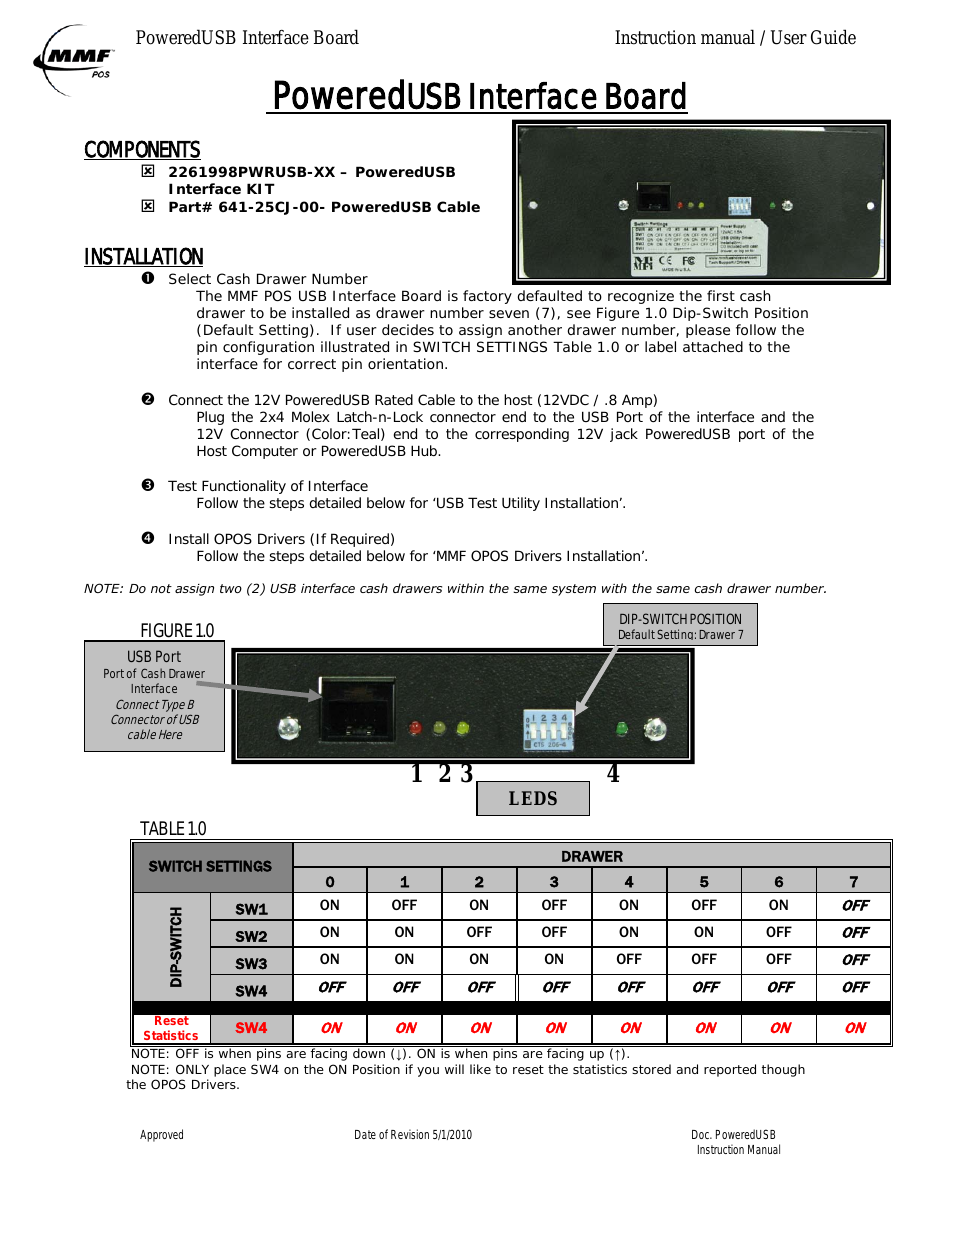 12V PoweredUSB Interface Kit